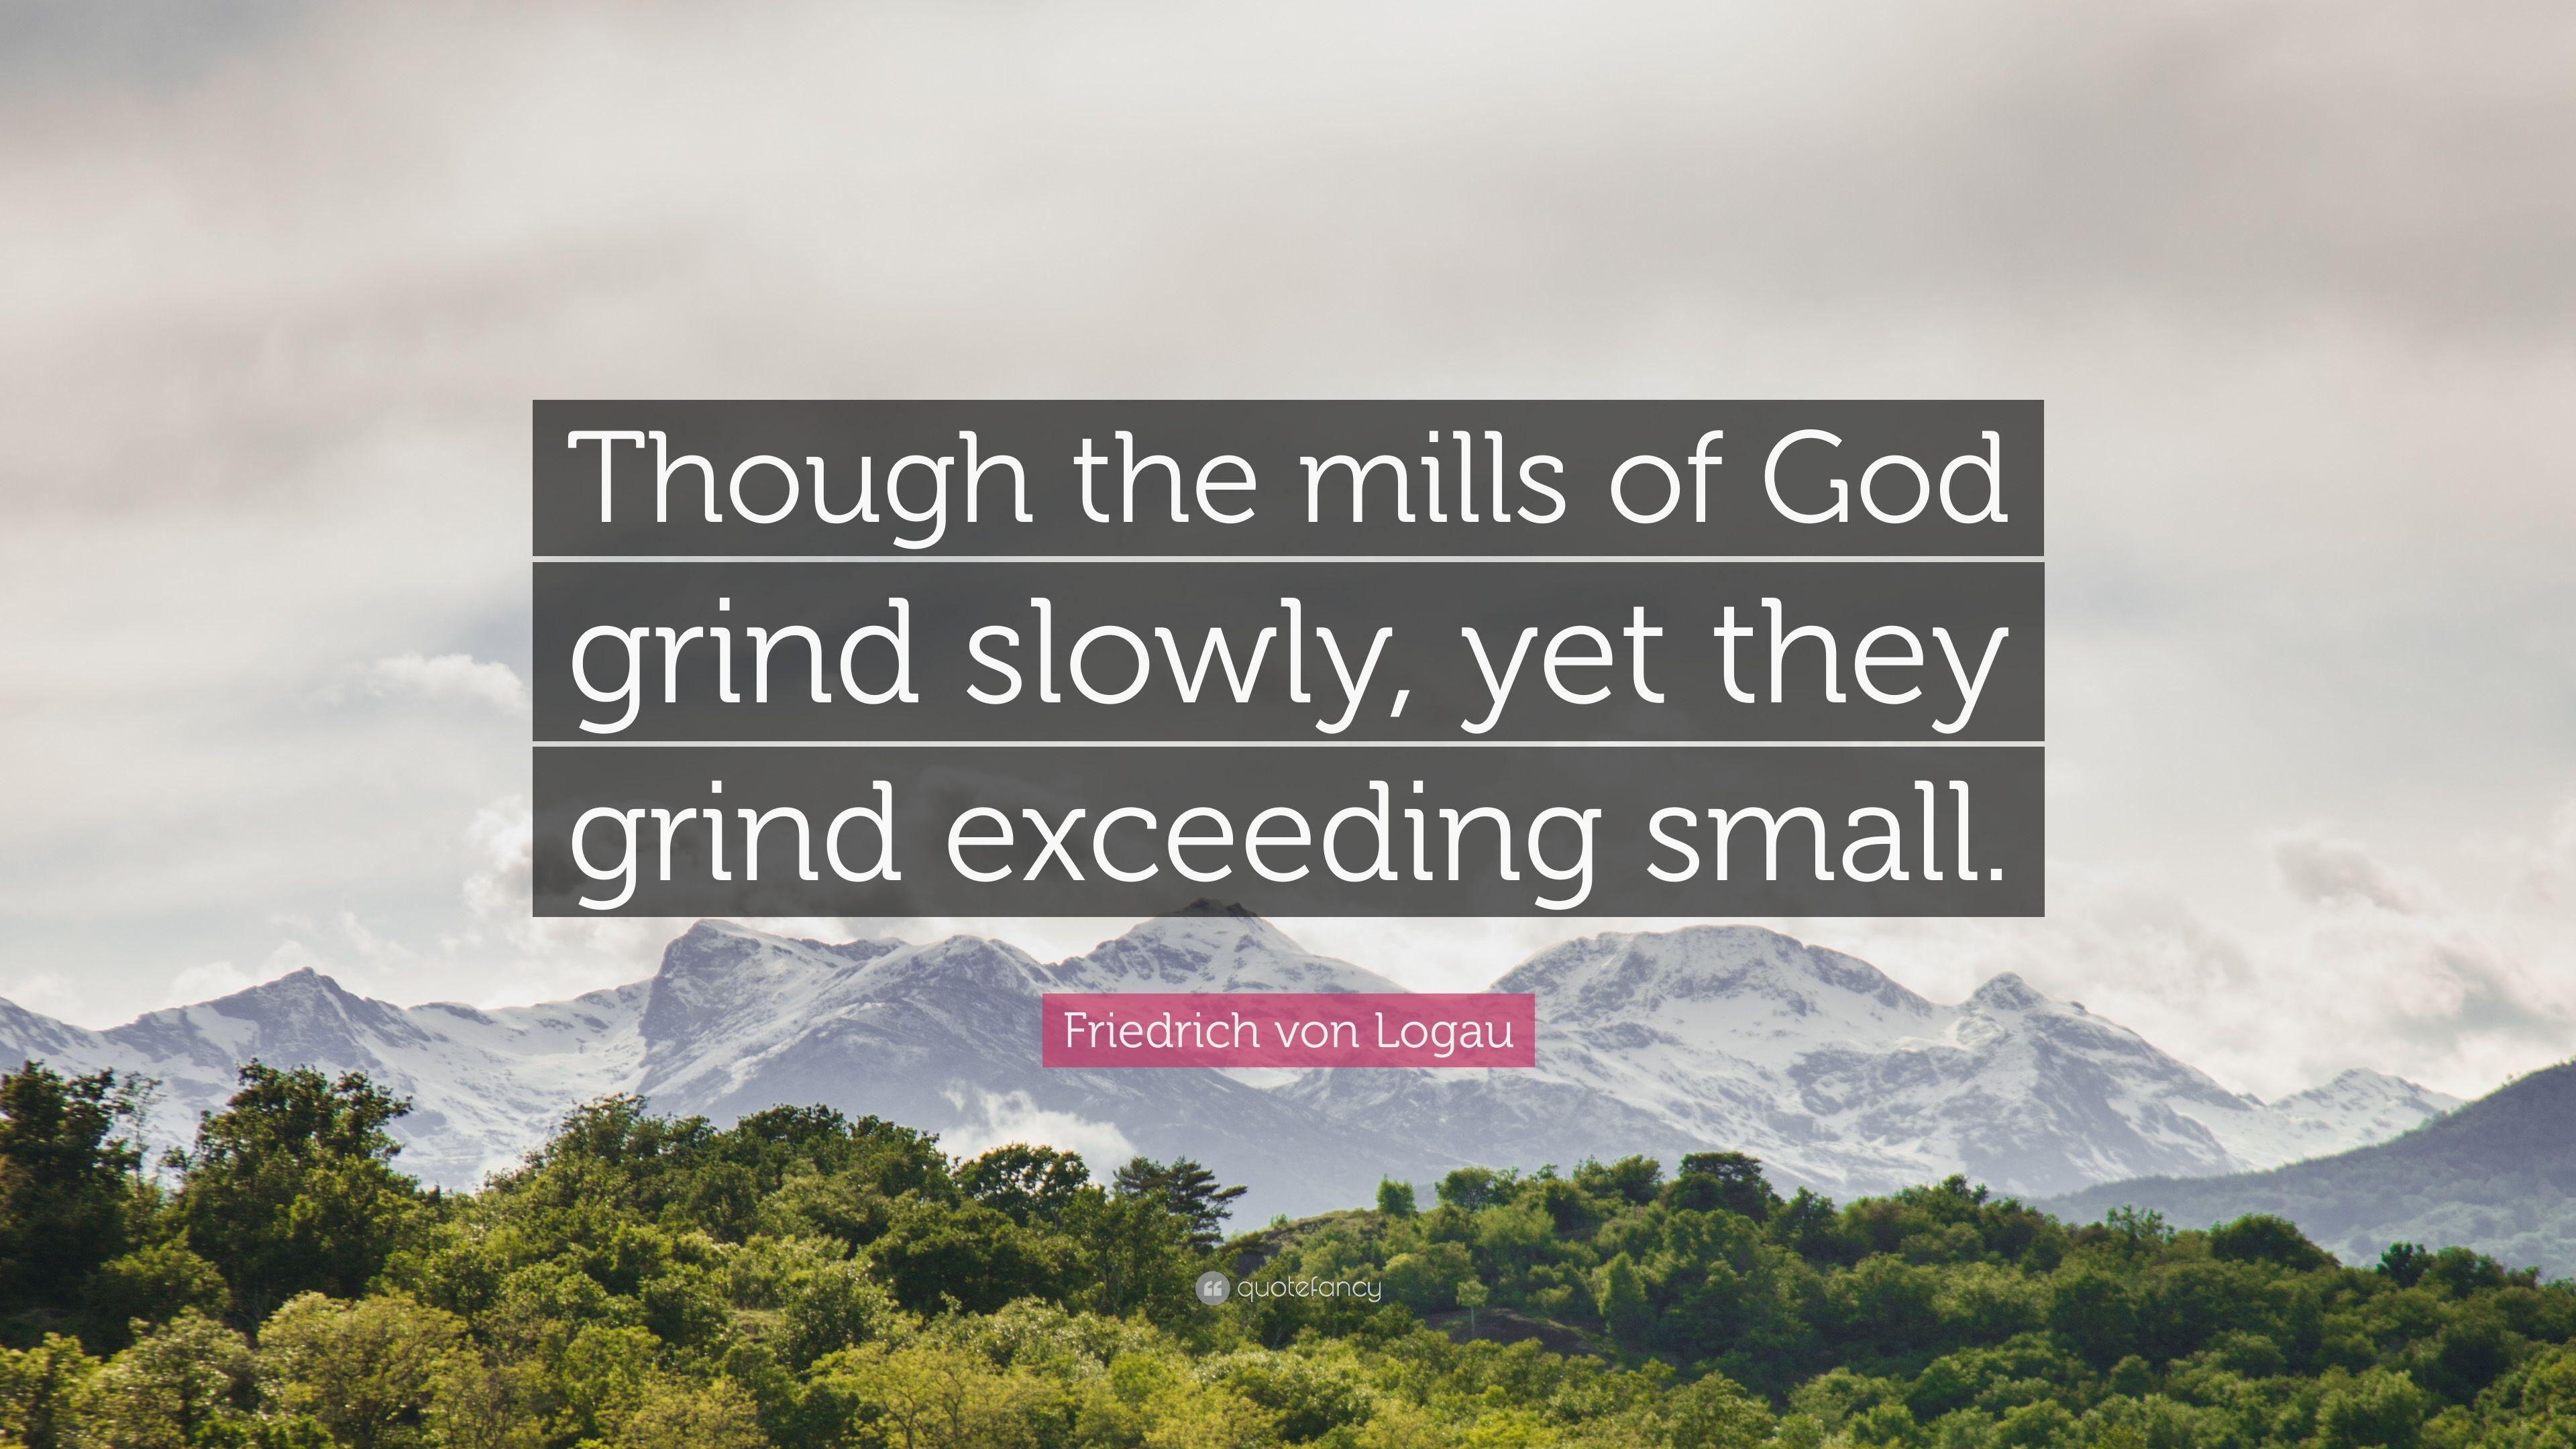 Friedrich von Logau Quote: “Though the mills of God grind slowly